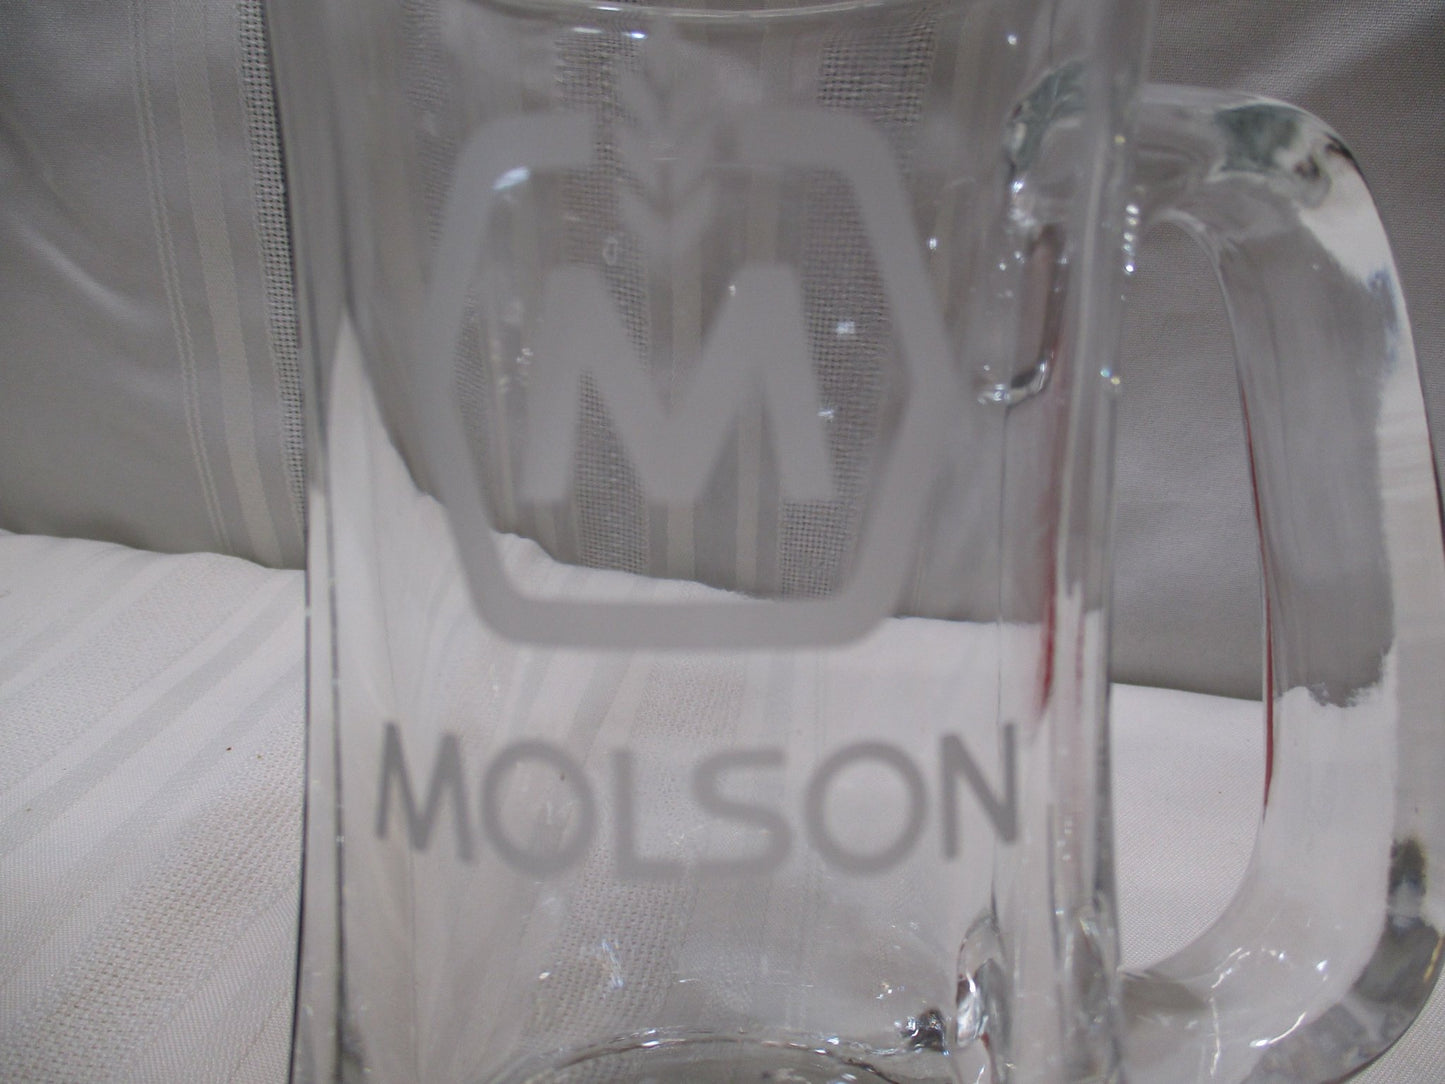 Molson Beer Mug Etched Crystal (74692 - Cactus Jax Unique Collectibles